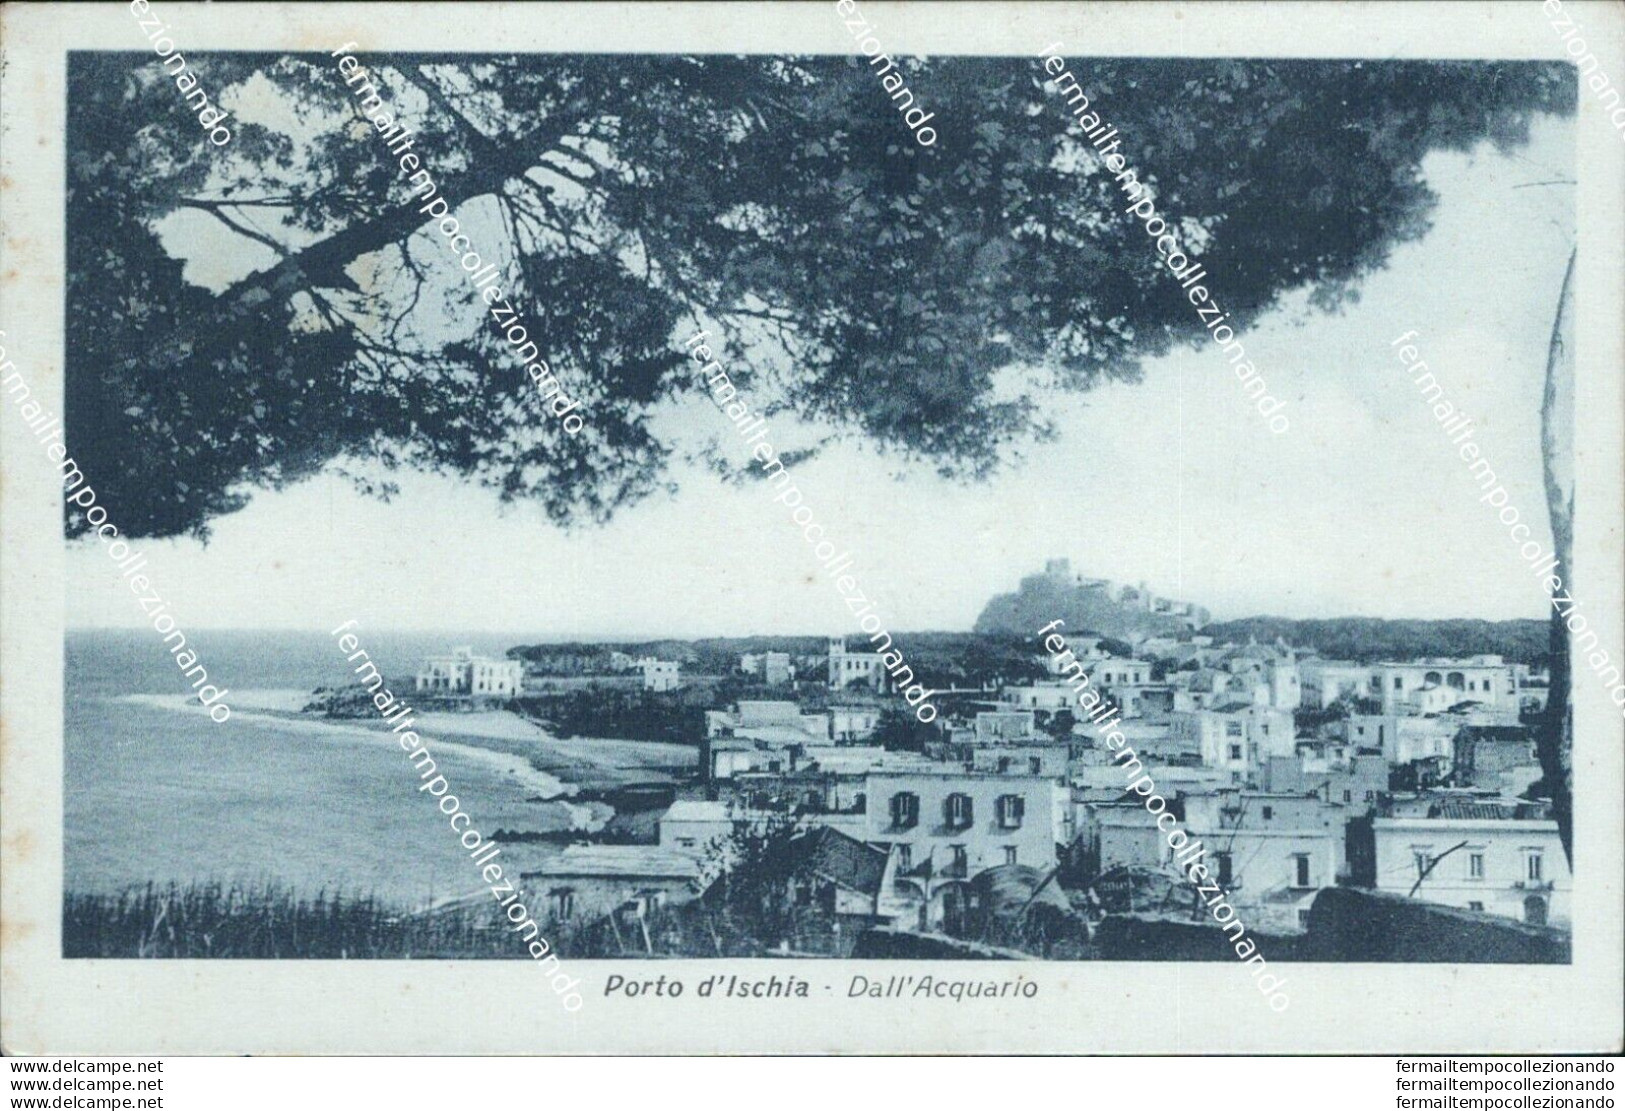 Bh192 Cartolina Porto D'ischia Dall'acquario Provincia Di Napoli - Napoli (Naples)